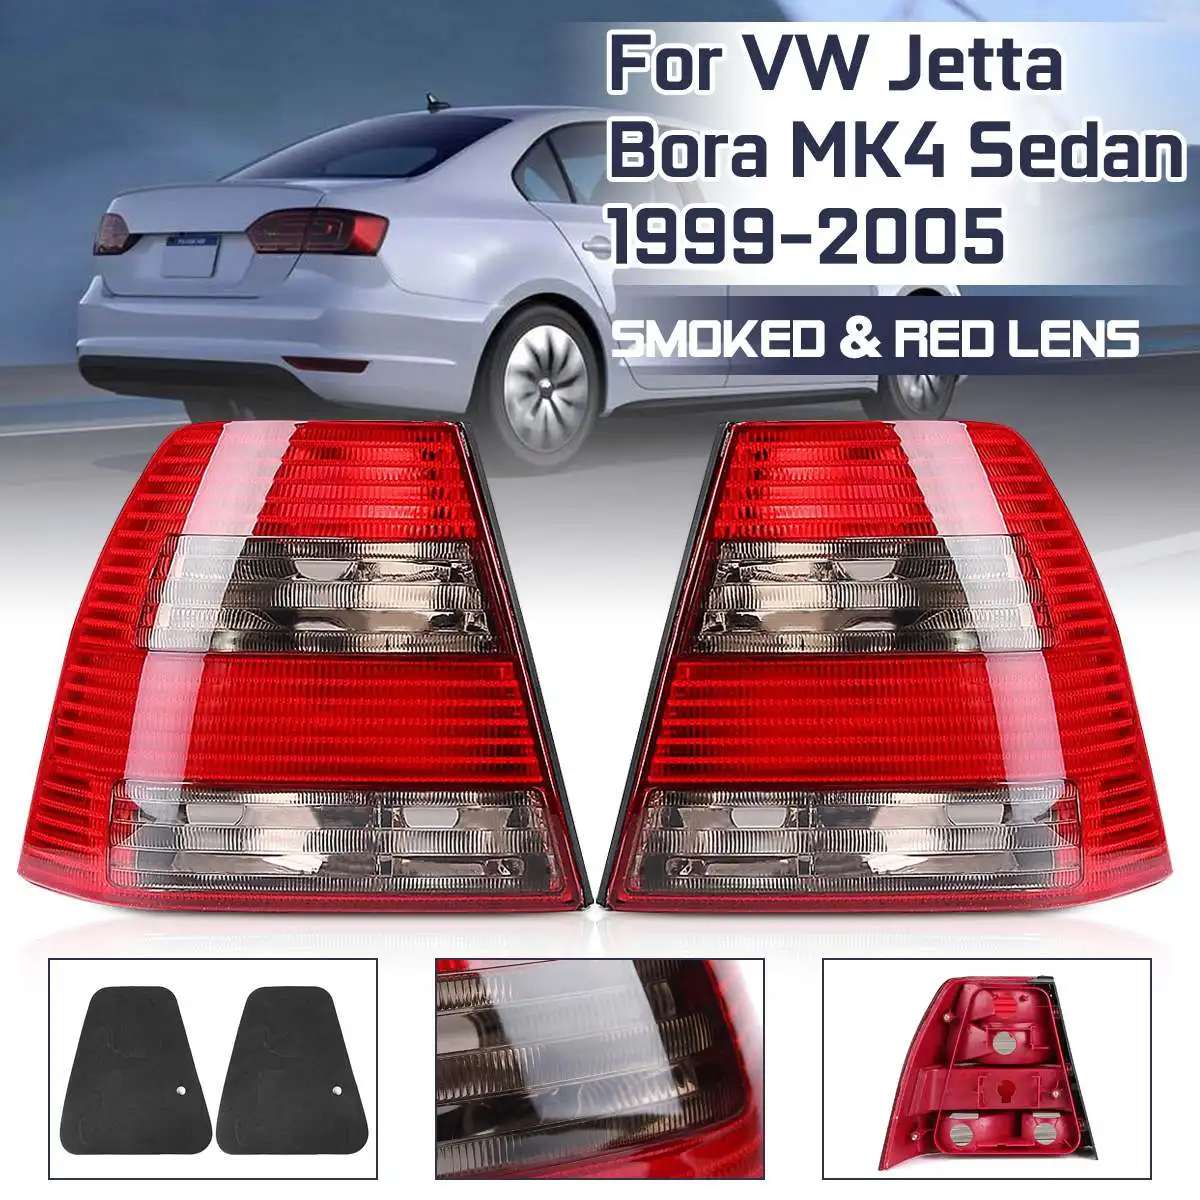 Хвост светильник для Volkswagen Vw Jetta Bora MK4 седан 1999 2000 2001 2002 2003-2005 хвост светильник заднего фонарь стоп-сигнала аксессуары